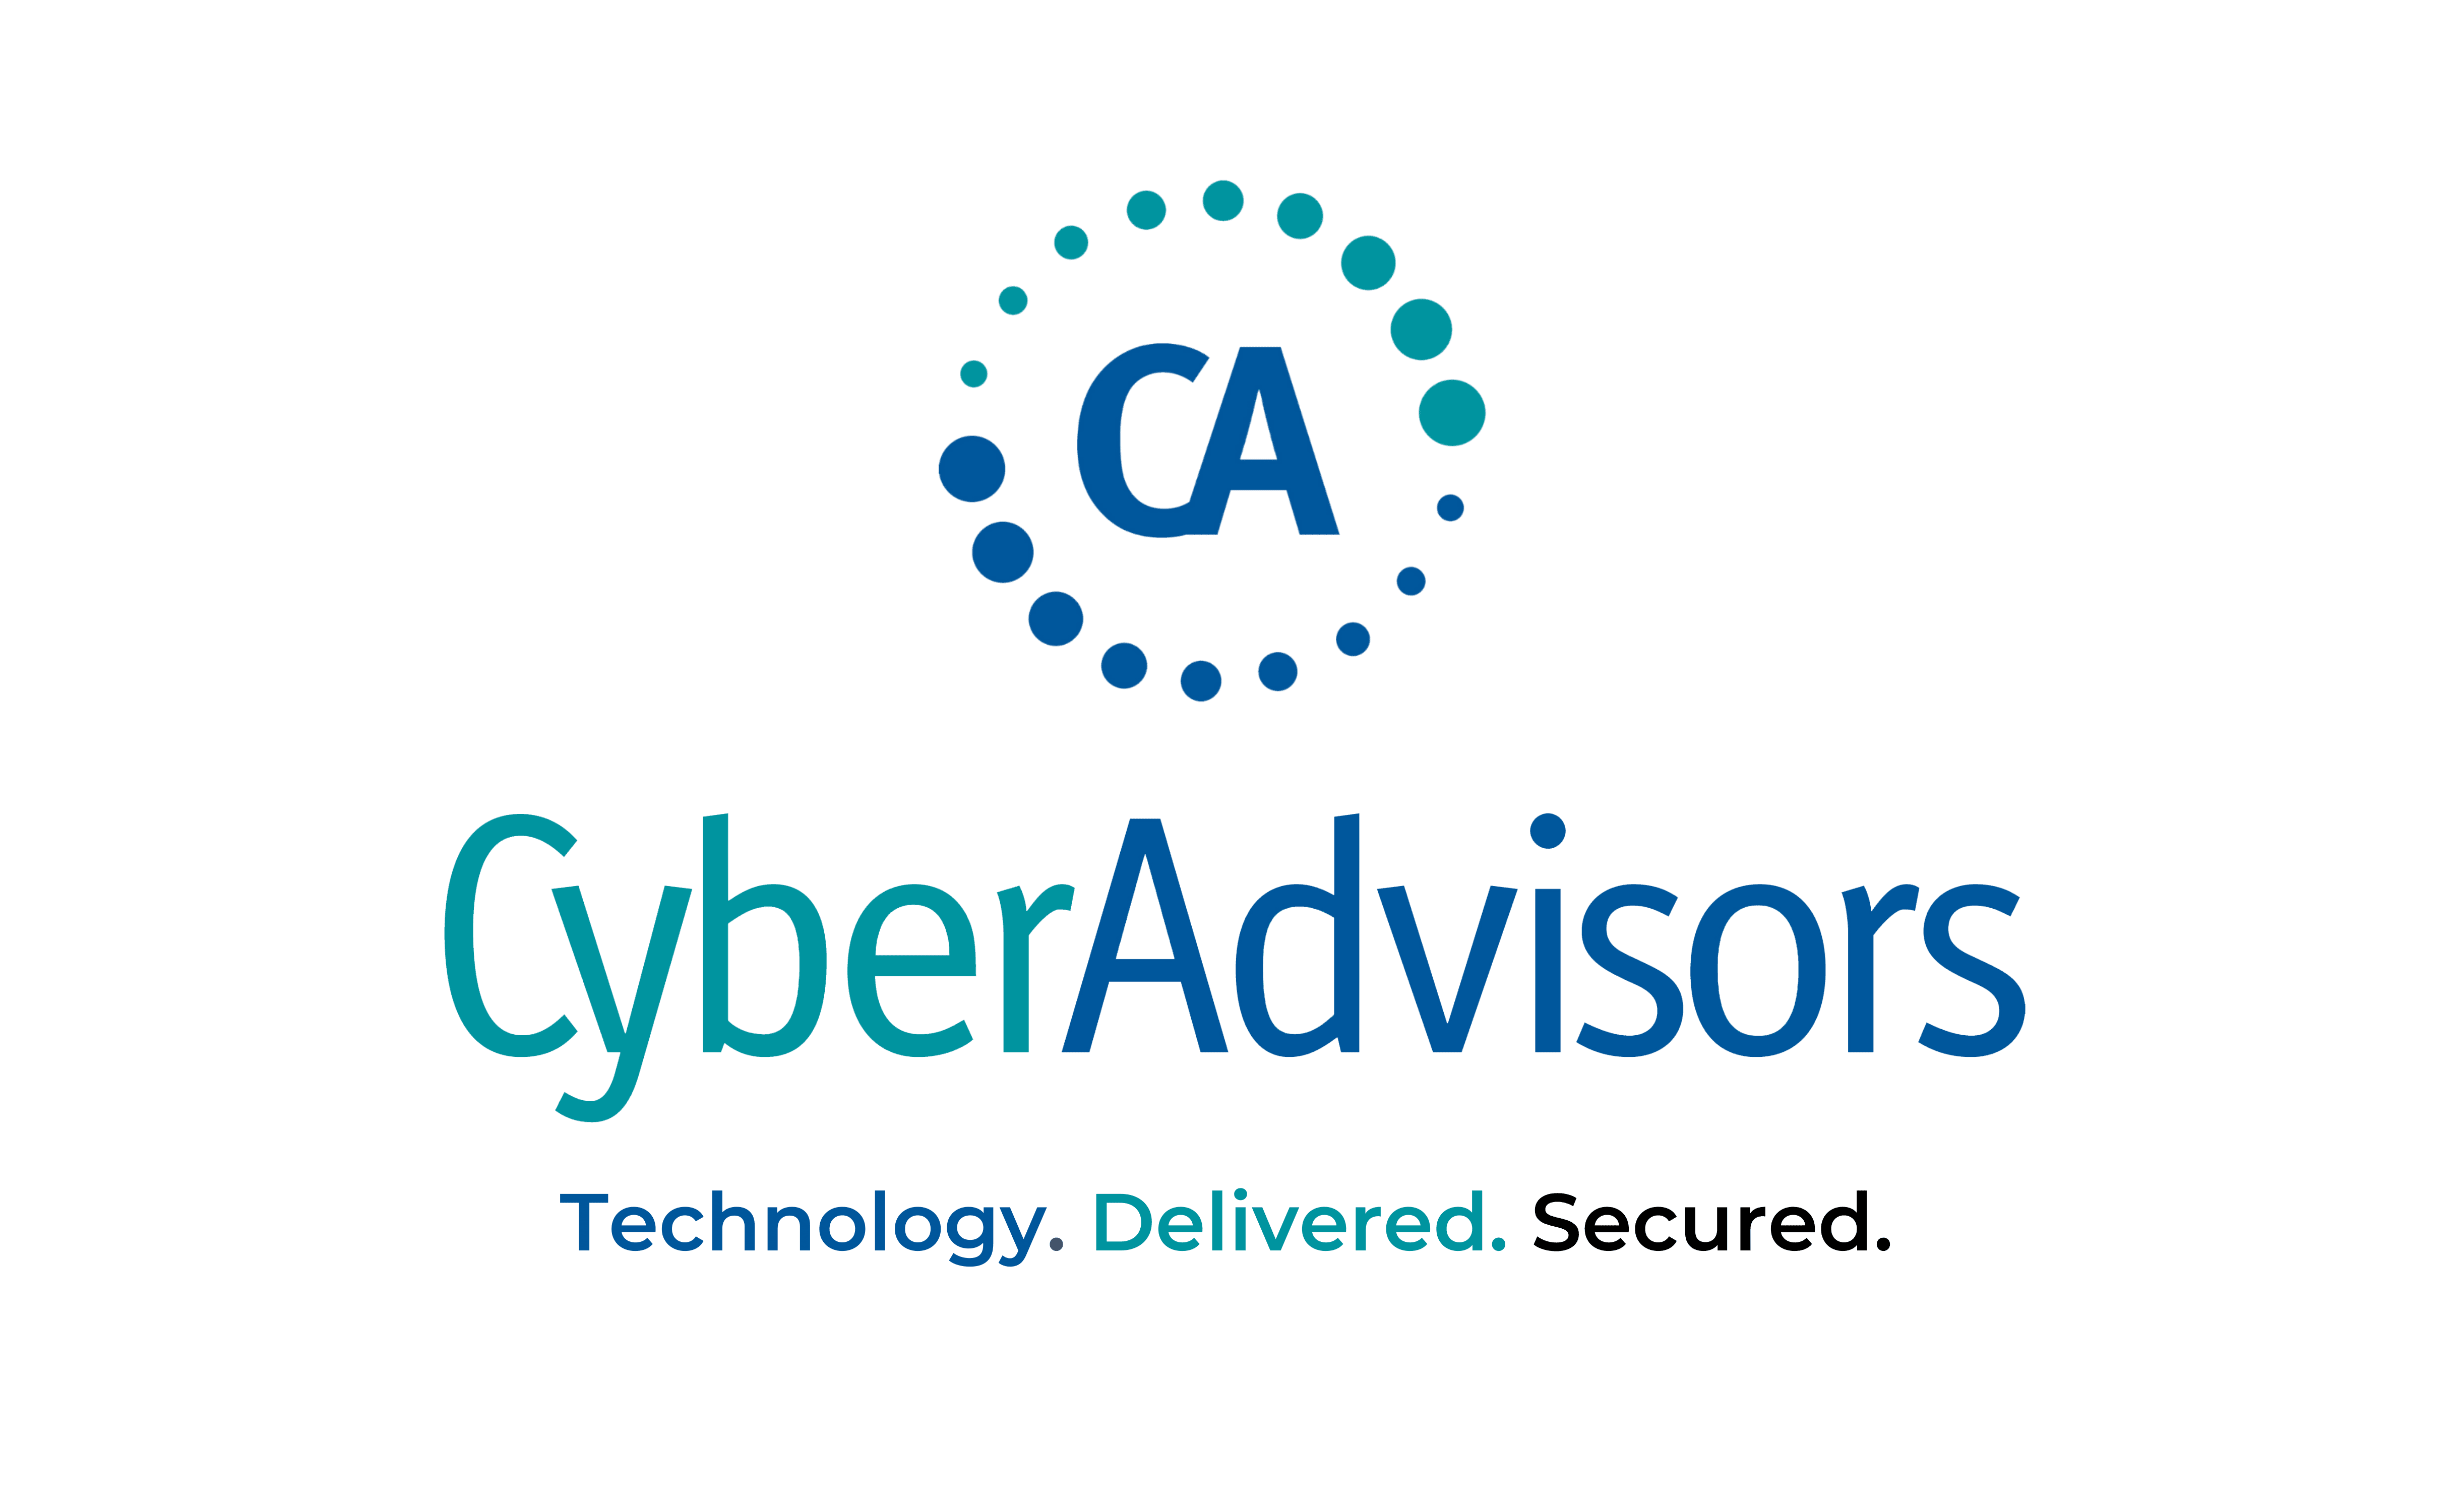 CyberAdvisors